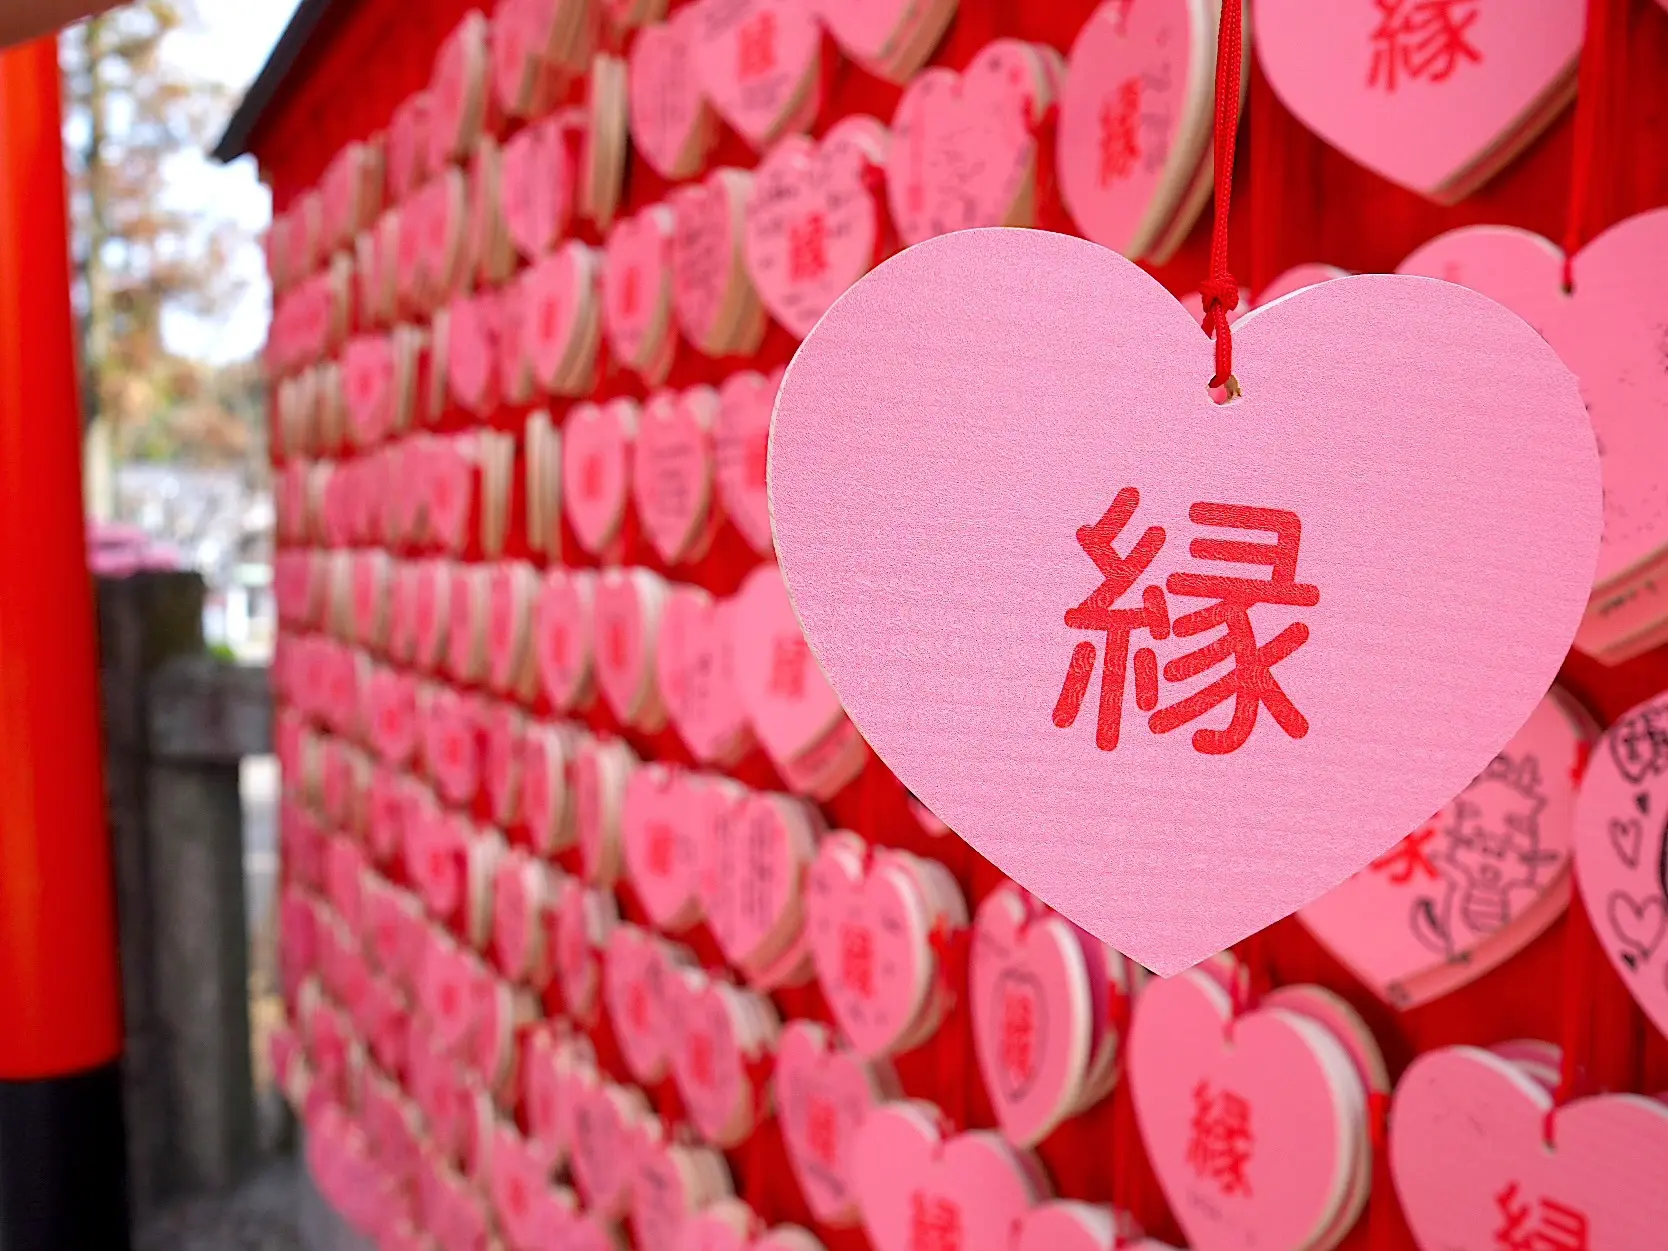 「三光稲荷神社」恋愛成就、夫婦円満にご利益があるそうでハートの縁という絵馬がとても印象的。